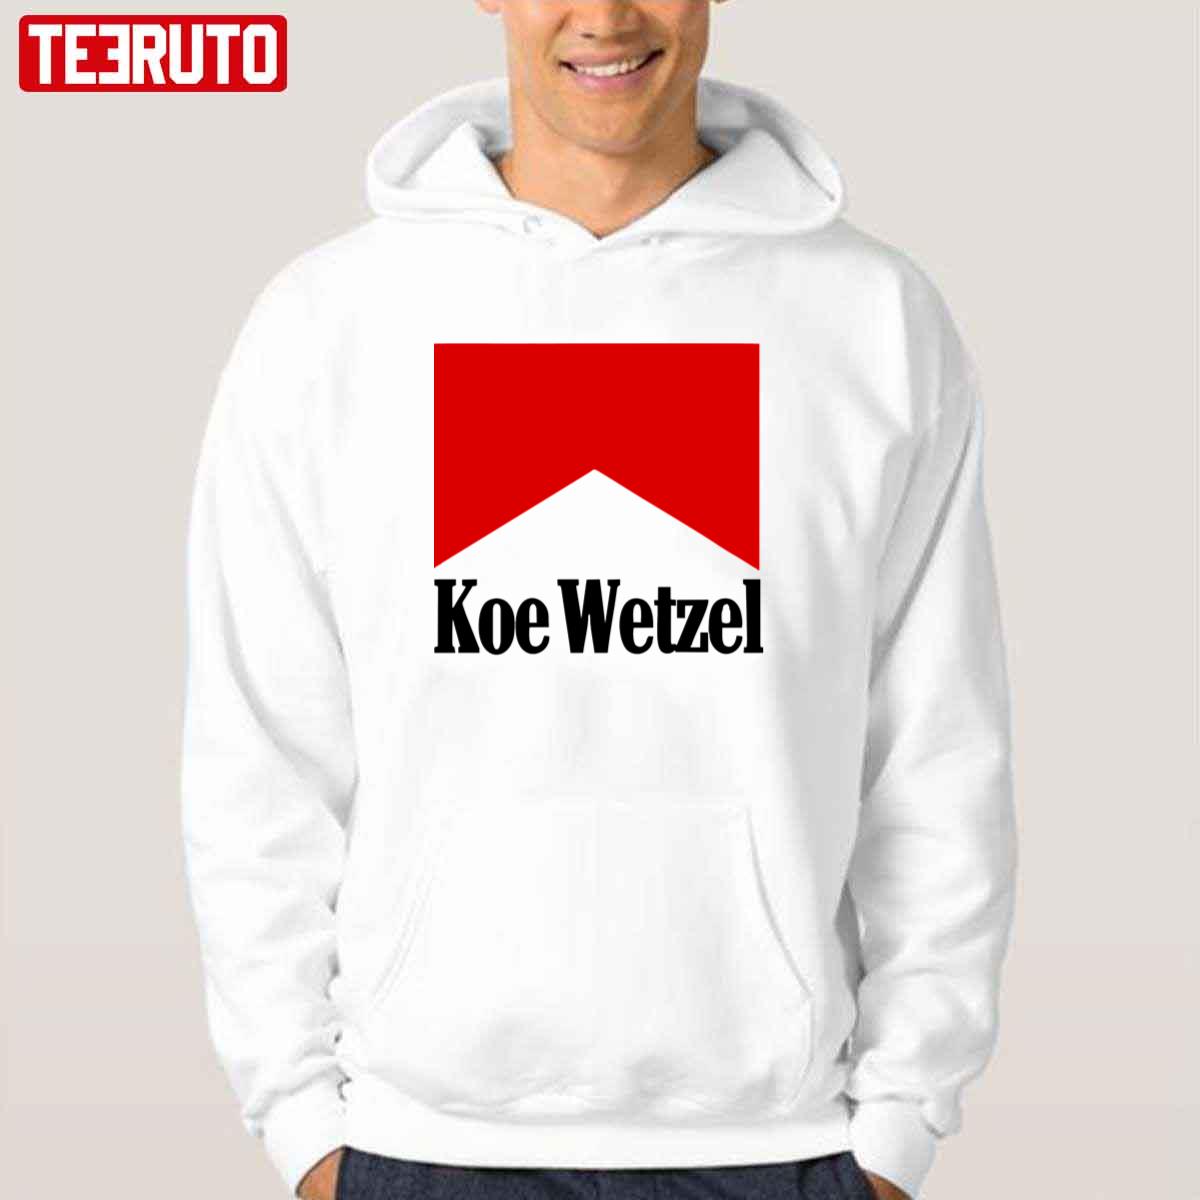 Koe Wetzel Merchandise Unisex Tshirt Teeruto